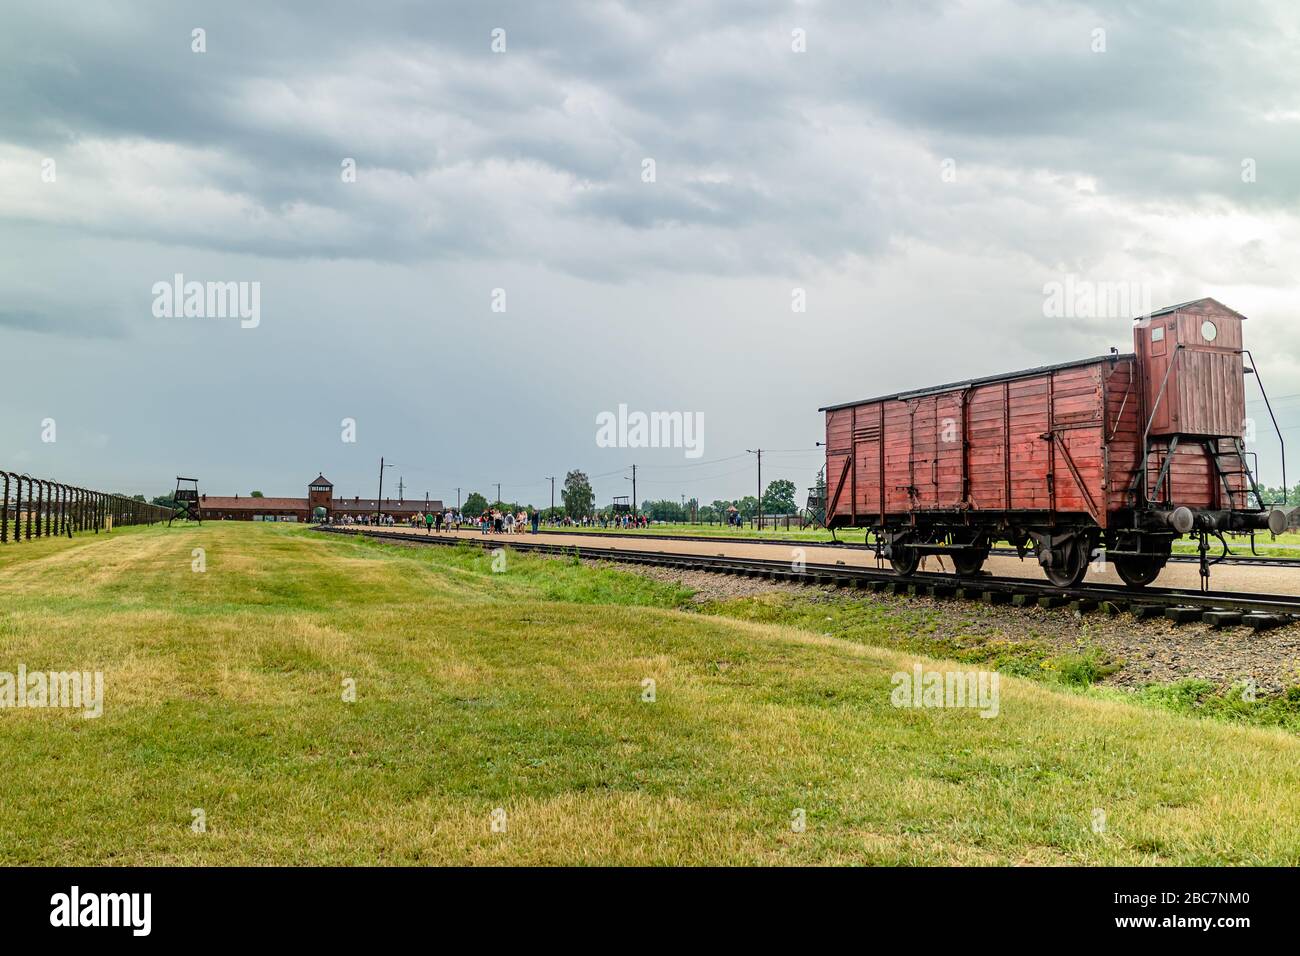 Un vagone ferroviario all'interno dell'ingresso del campo di concentramento di Auschwitz-Birkenau degli anni '40, ora conservato in memoria. Oswiecim, Polonia. Luglio 2017. Foto Stock